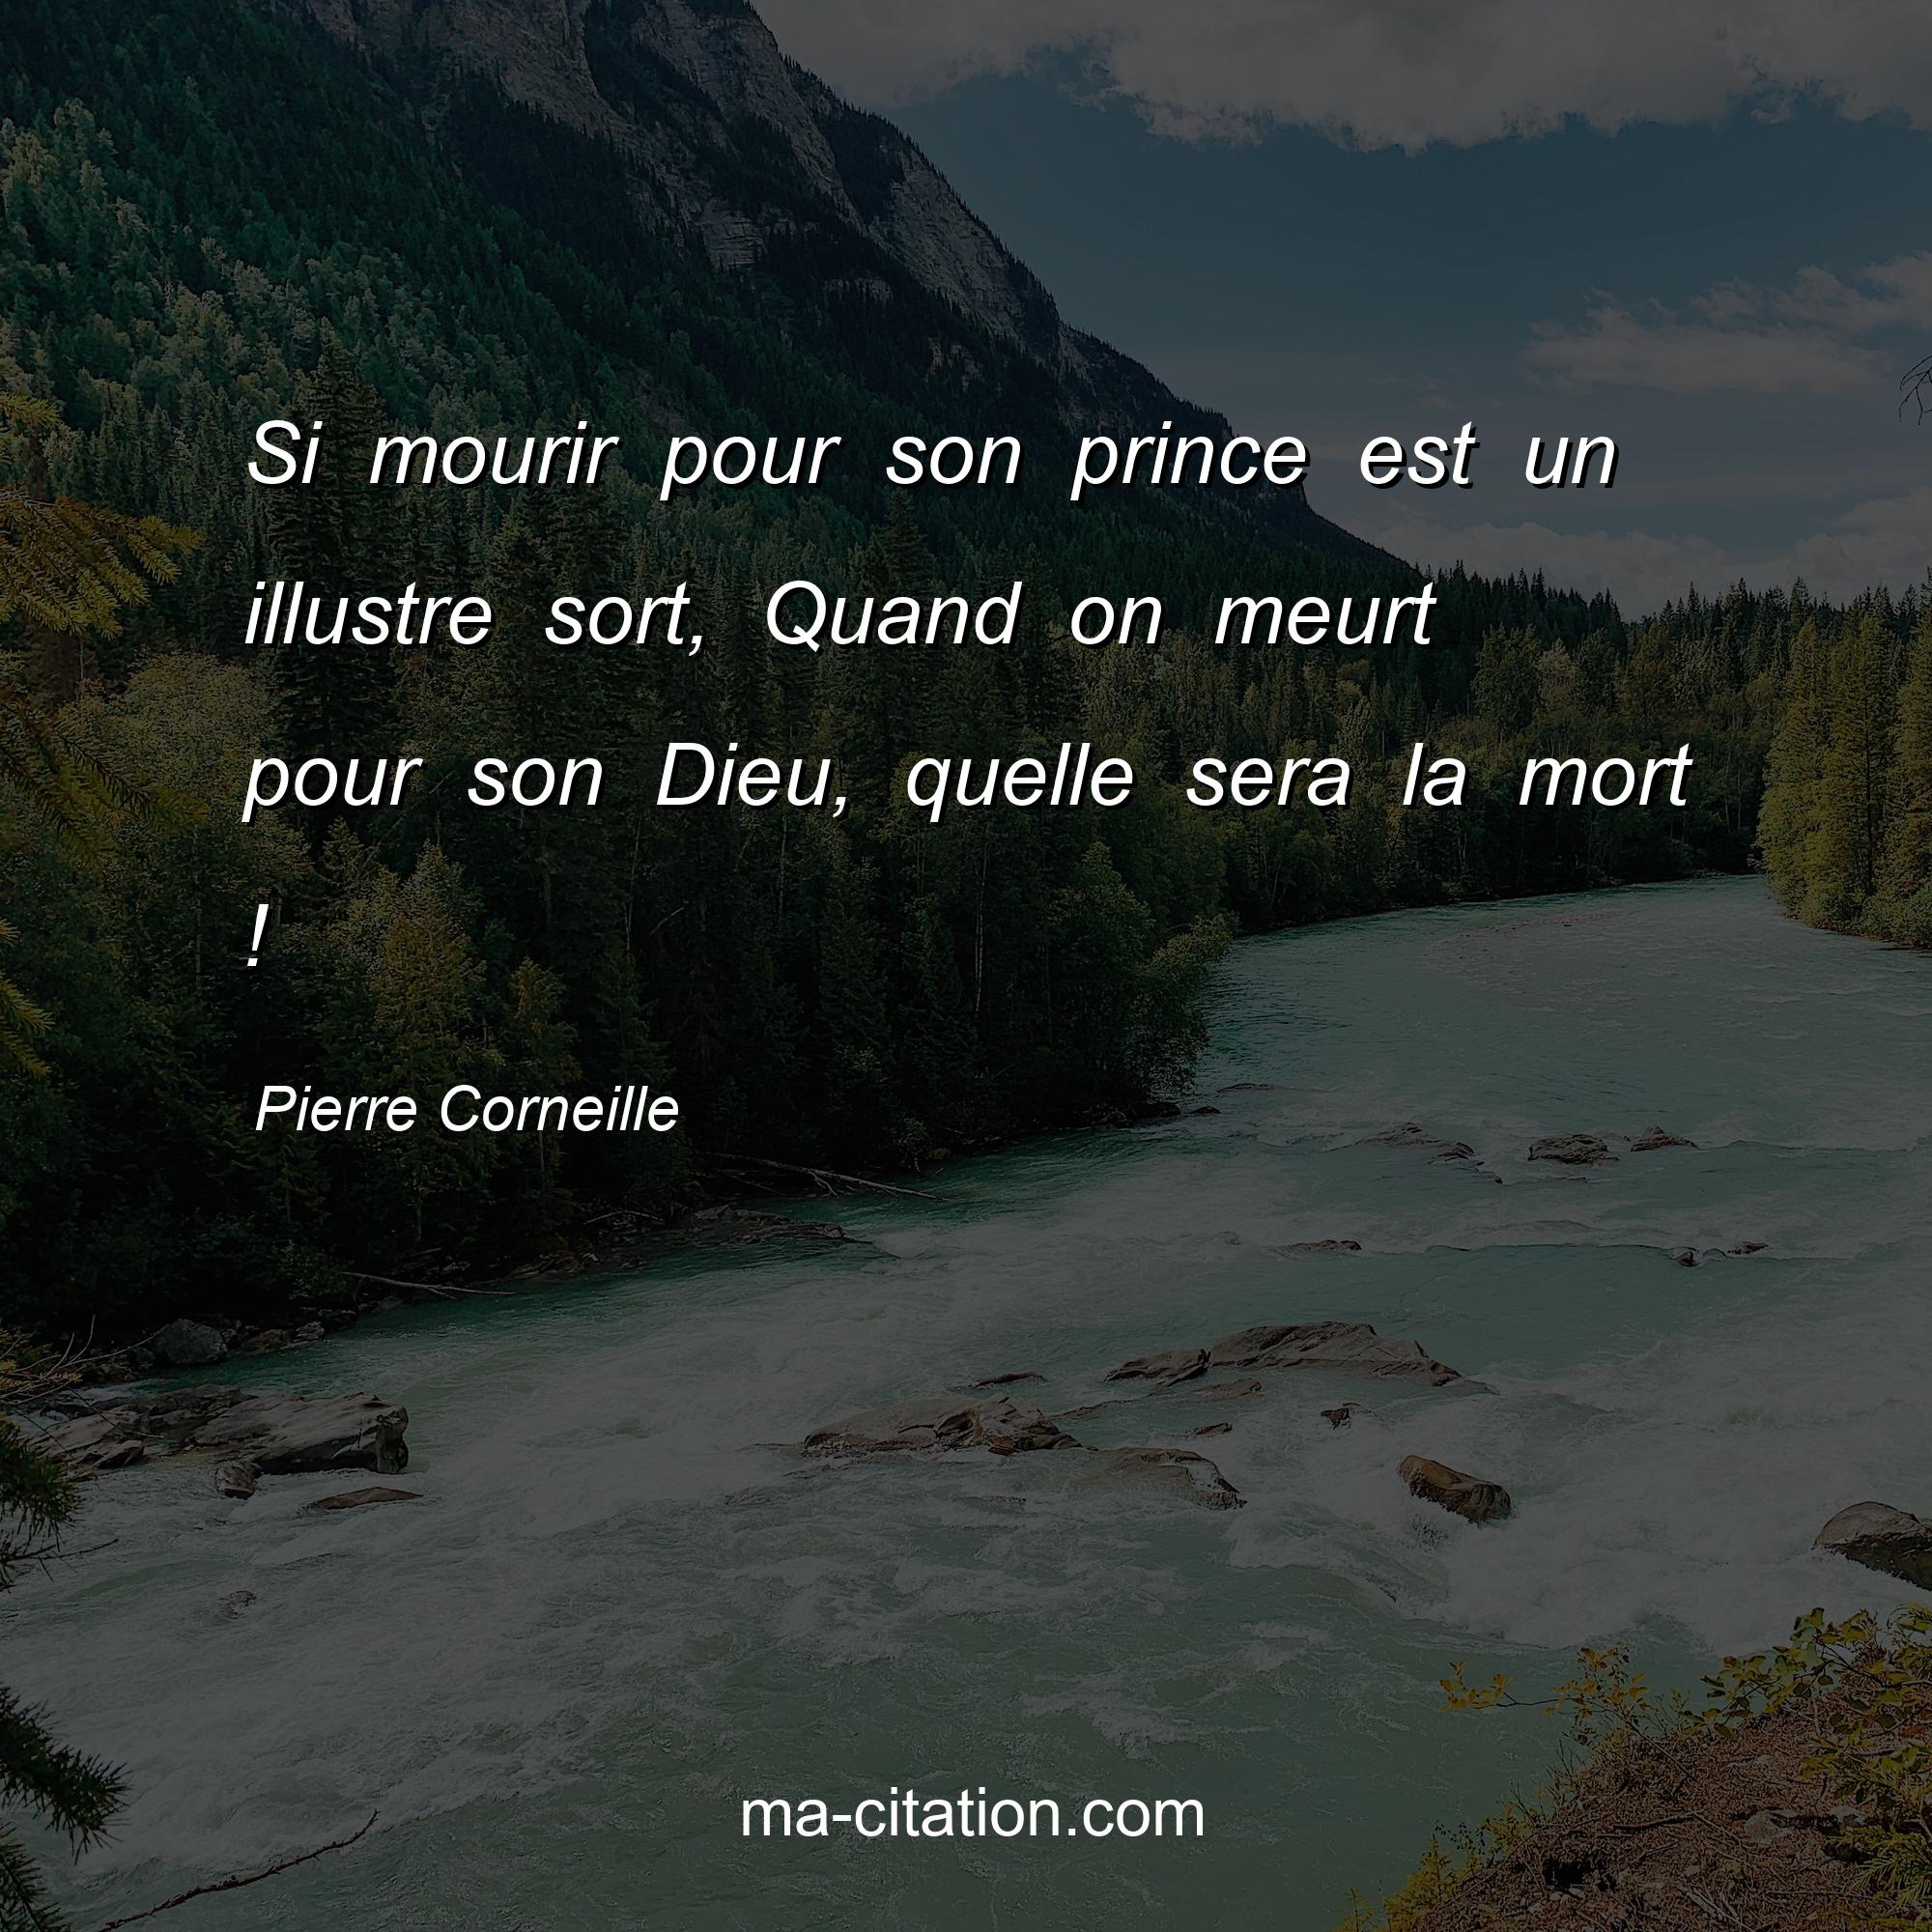 Pierre Corneille : Si mourir pour son prince est un illustre sort, Quand on meurt pour son Dieu, quelle sera la mort !